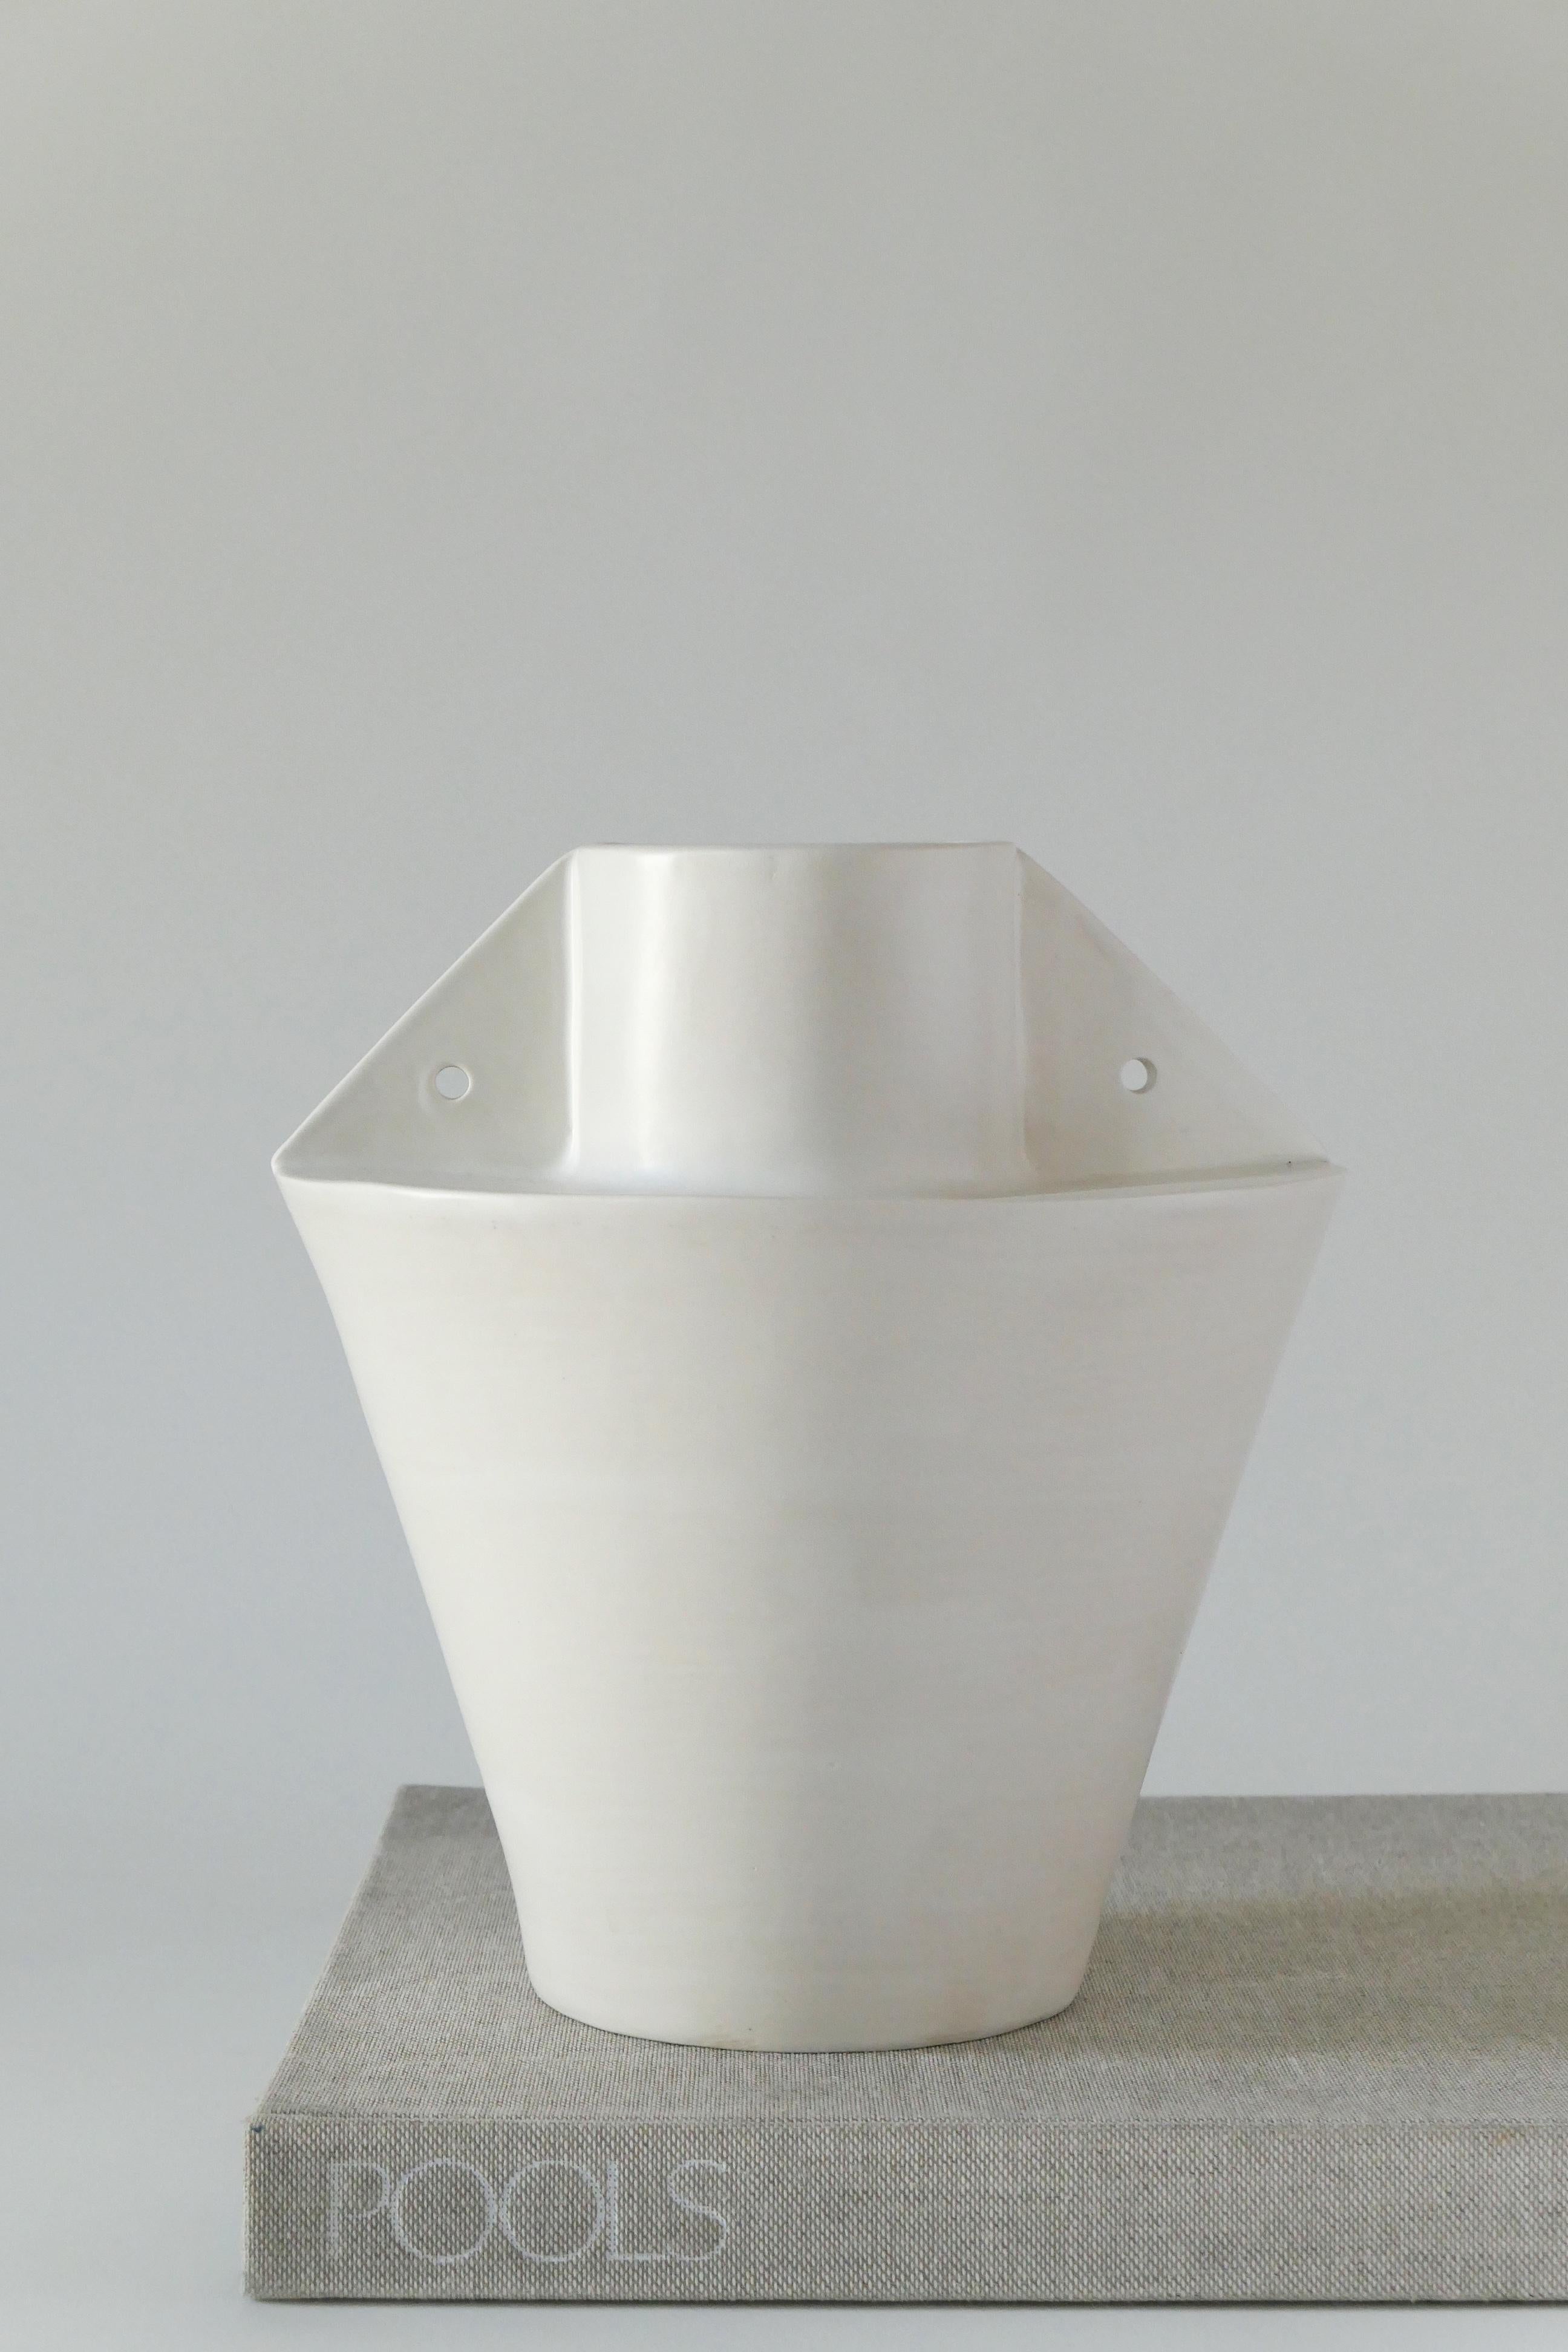 Vase aus weißem Steingut mit weicher, weißer Glasur. Diese Vase ist aus Tonplatten handgefertigt.

Karina Vieira ist eine in Brooklyn ansässige Keramikerin, die sich auf handgefertigte Gefäße konzentriert. 

Ihr Werk bezieht sich auf